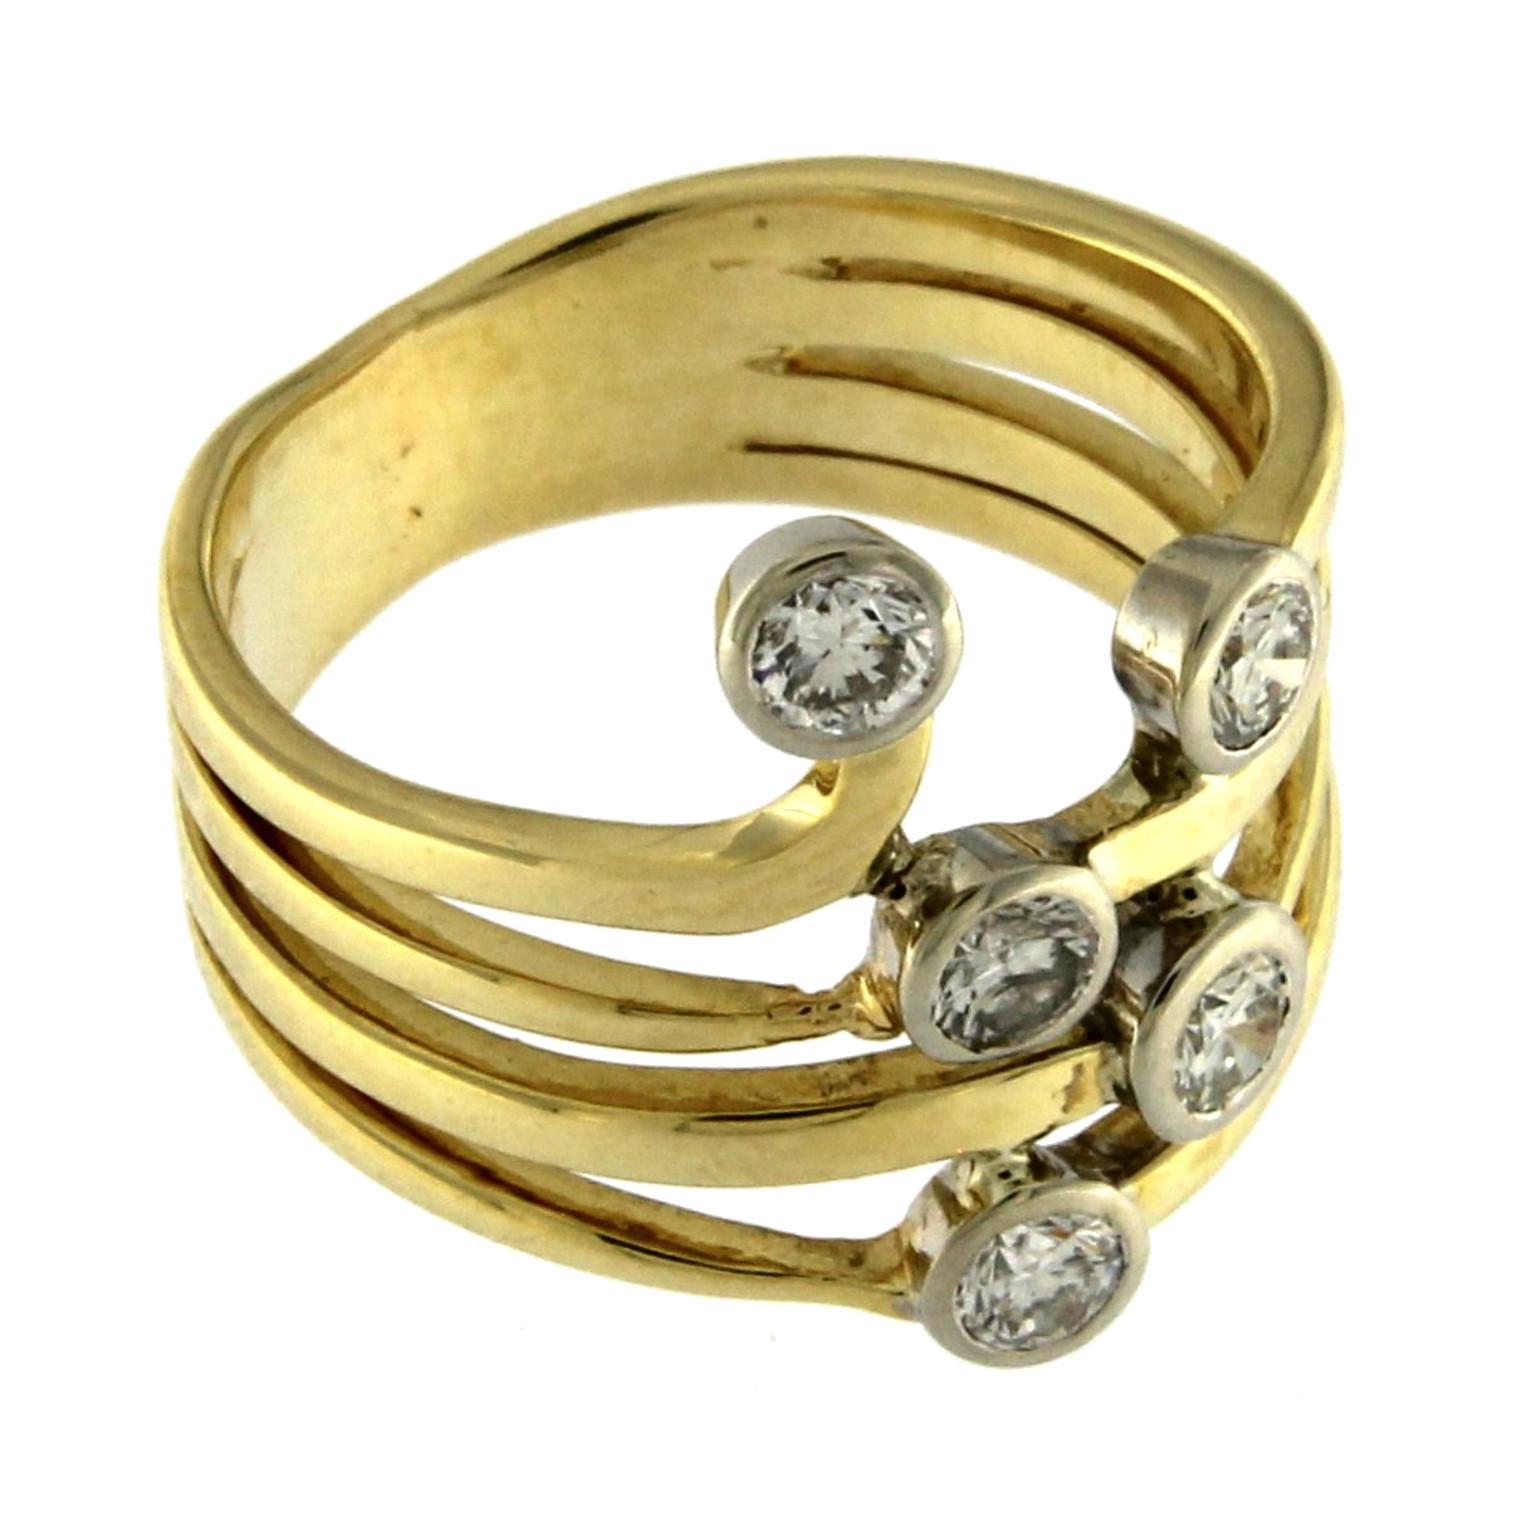 Ring 18 Karat Gelbgold mit weißen Diamanten

das Gesamtgewicht des Goldes beträgt  gr 7,50
das Gesamtgewicht der weißen Diamanten beträgt 0,50 ct

US-GRÖSSE 7.25
